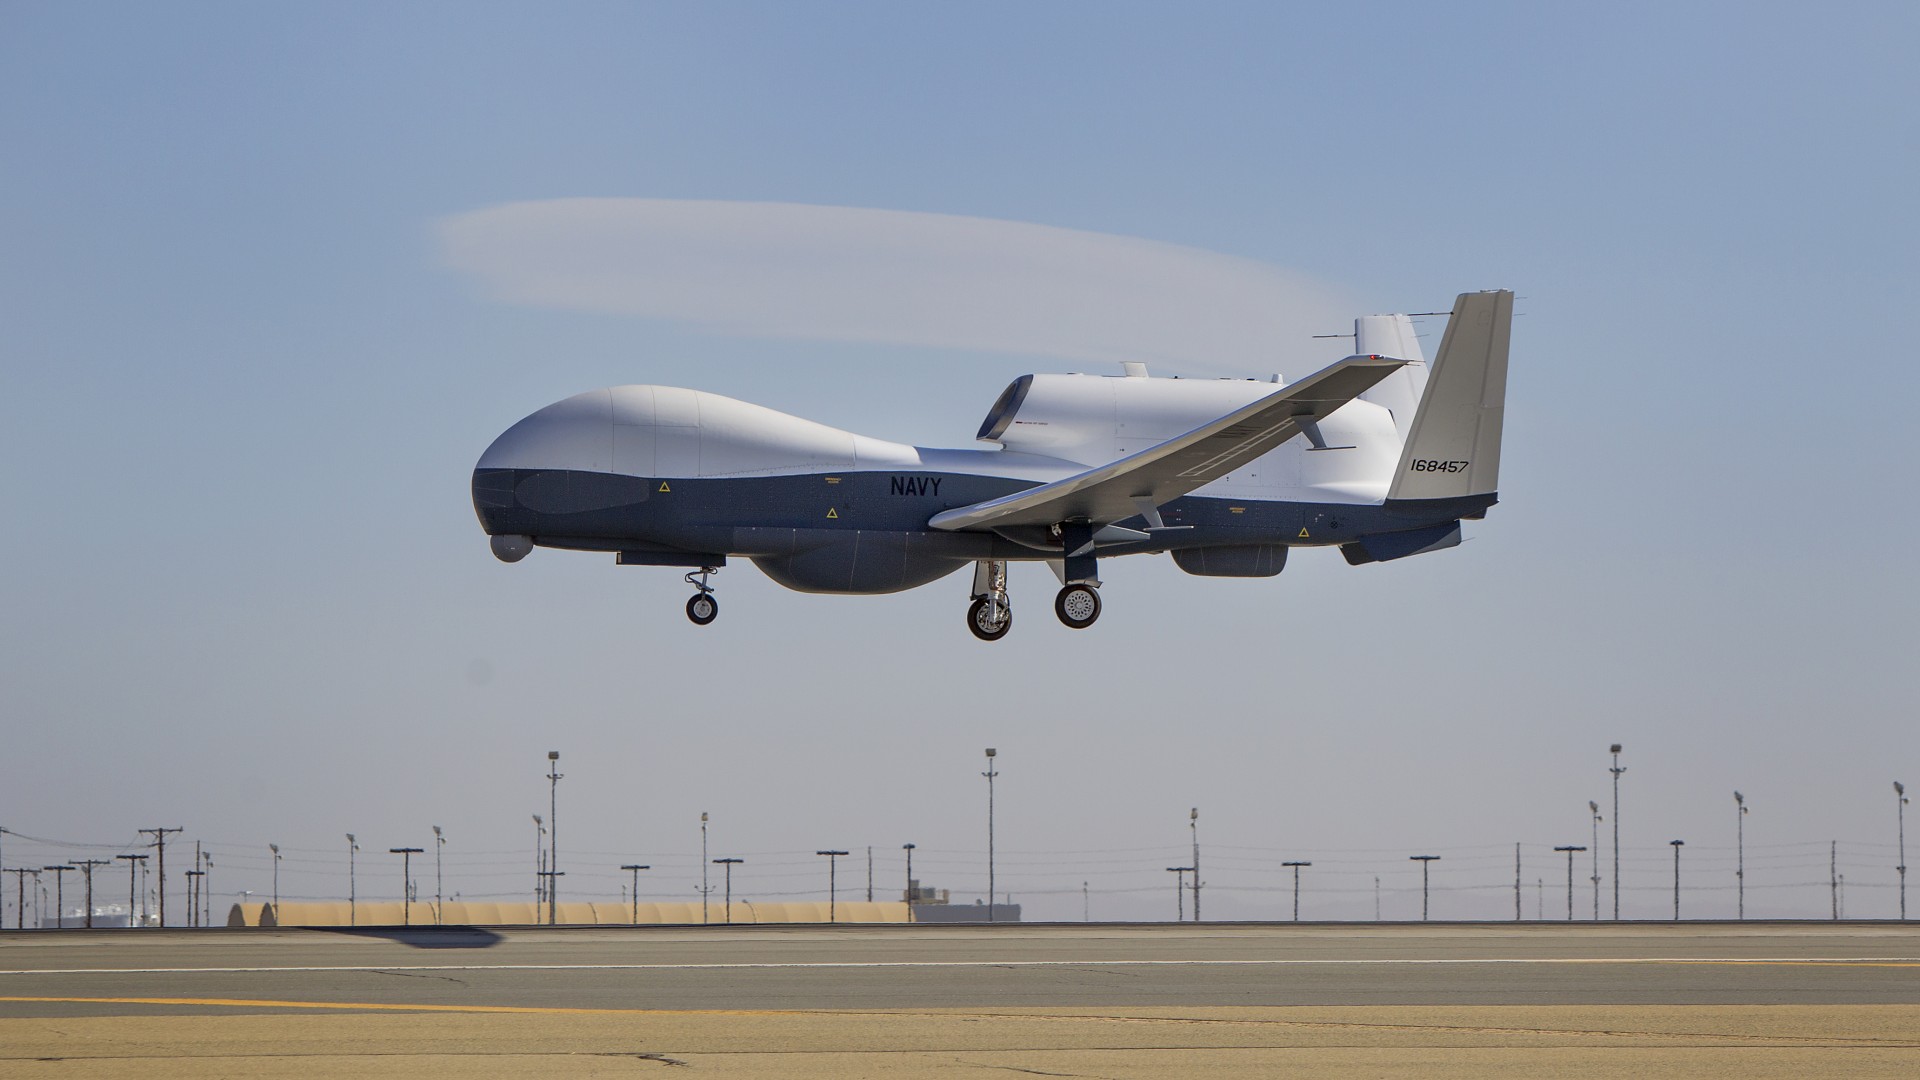 MQ-4C Triton, MQ-4C, дрон, беспилотник, армия США, MQ-4C Triton, MQ-4C, drone, Surveillance UAV, USA Army, landing (horizontal)